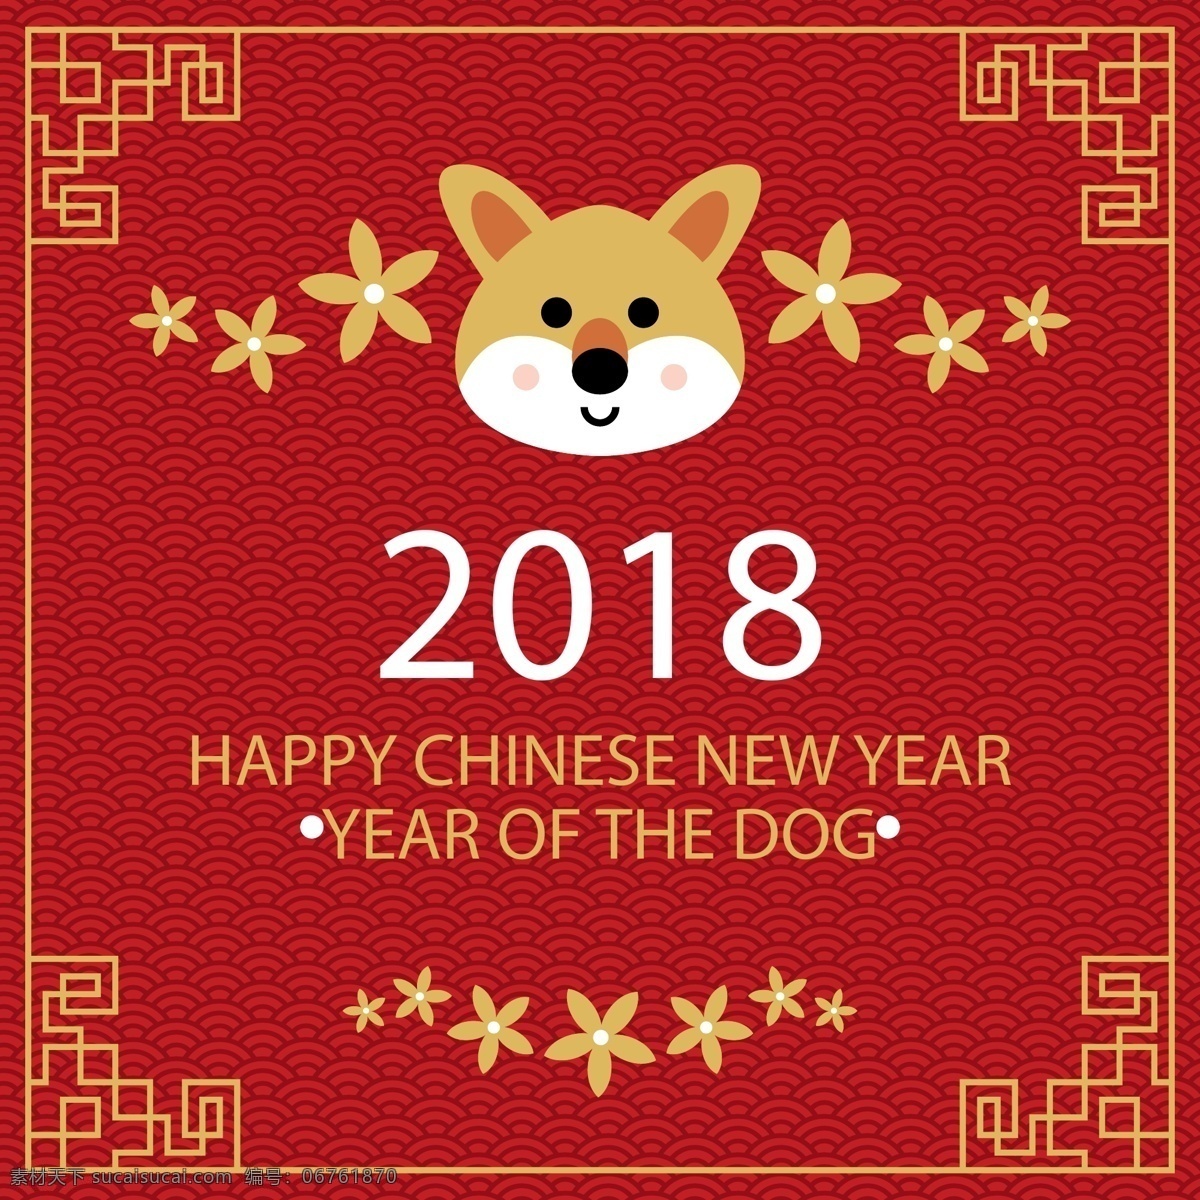 2018 年 可爱 小狗 头像 贺卡 花卉 花纹 happy chinese new year 狗 2018年 海浪纹 名片卡片